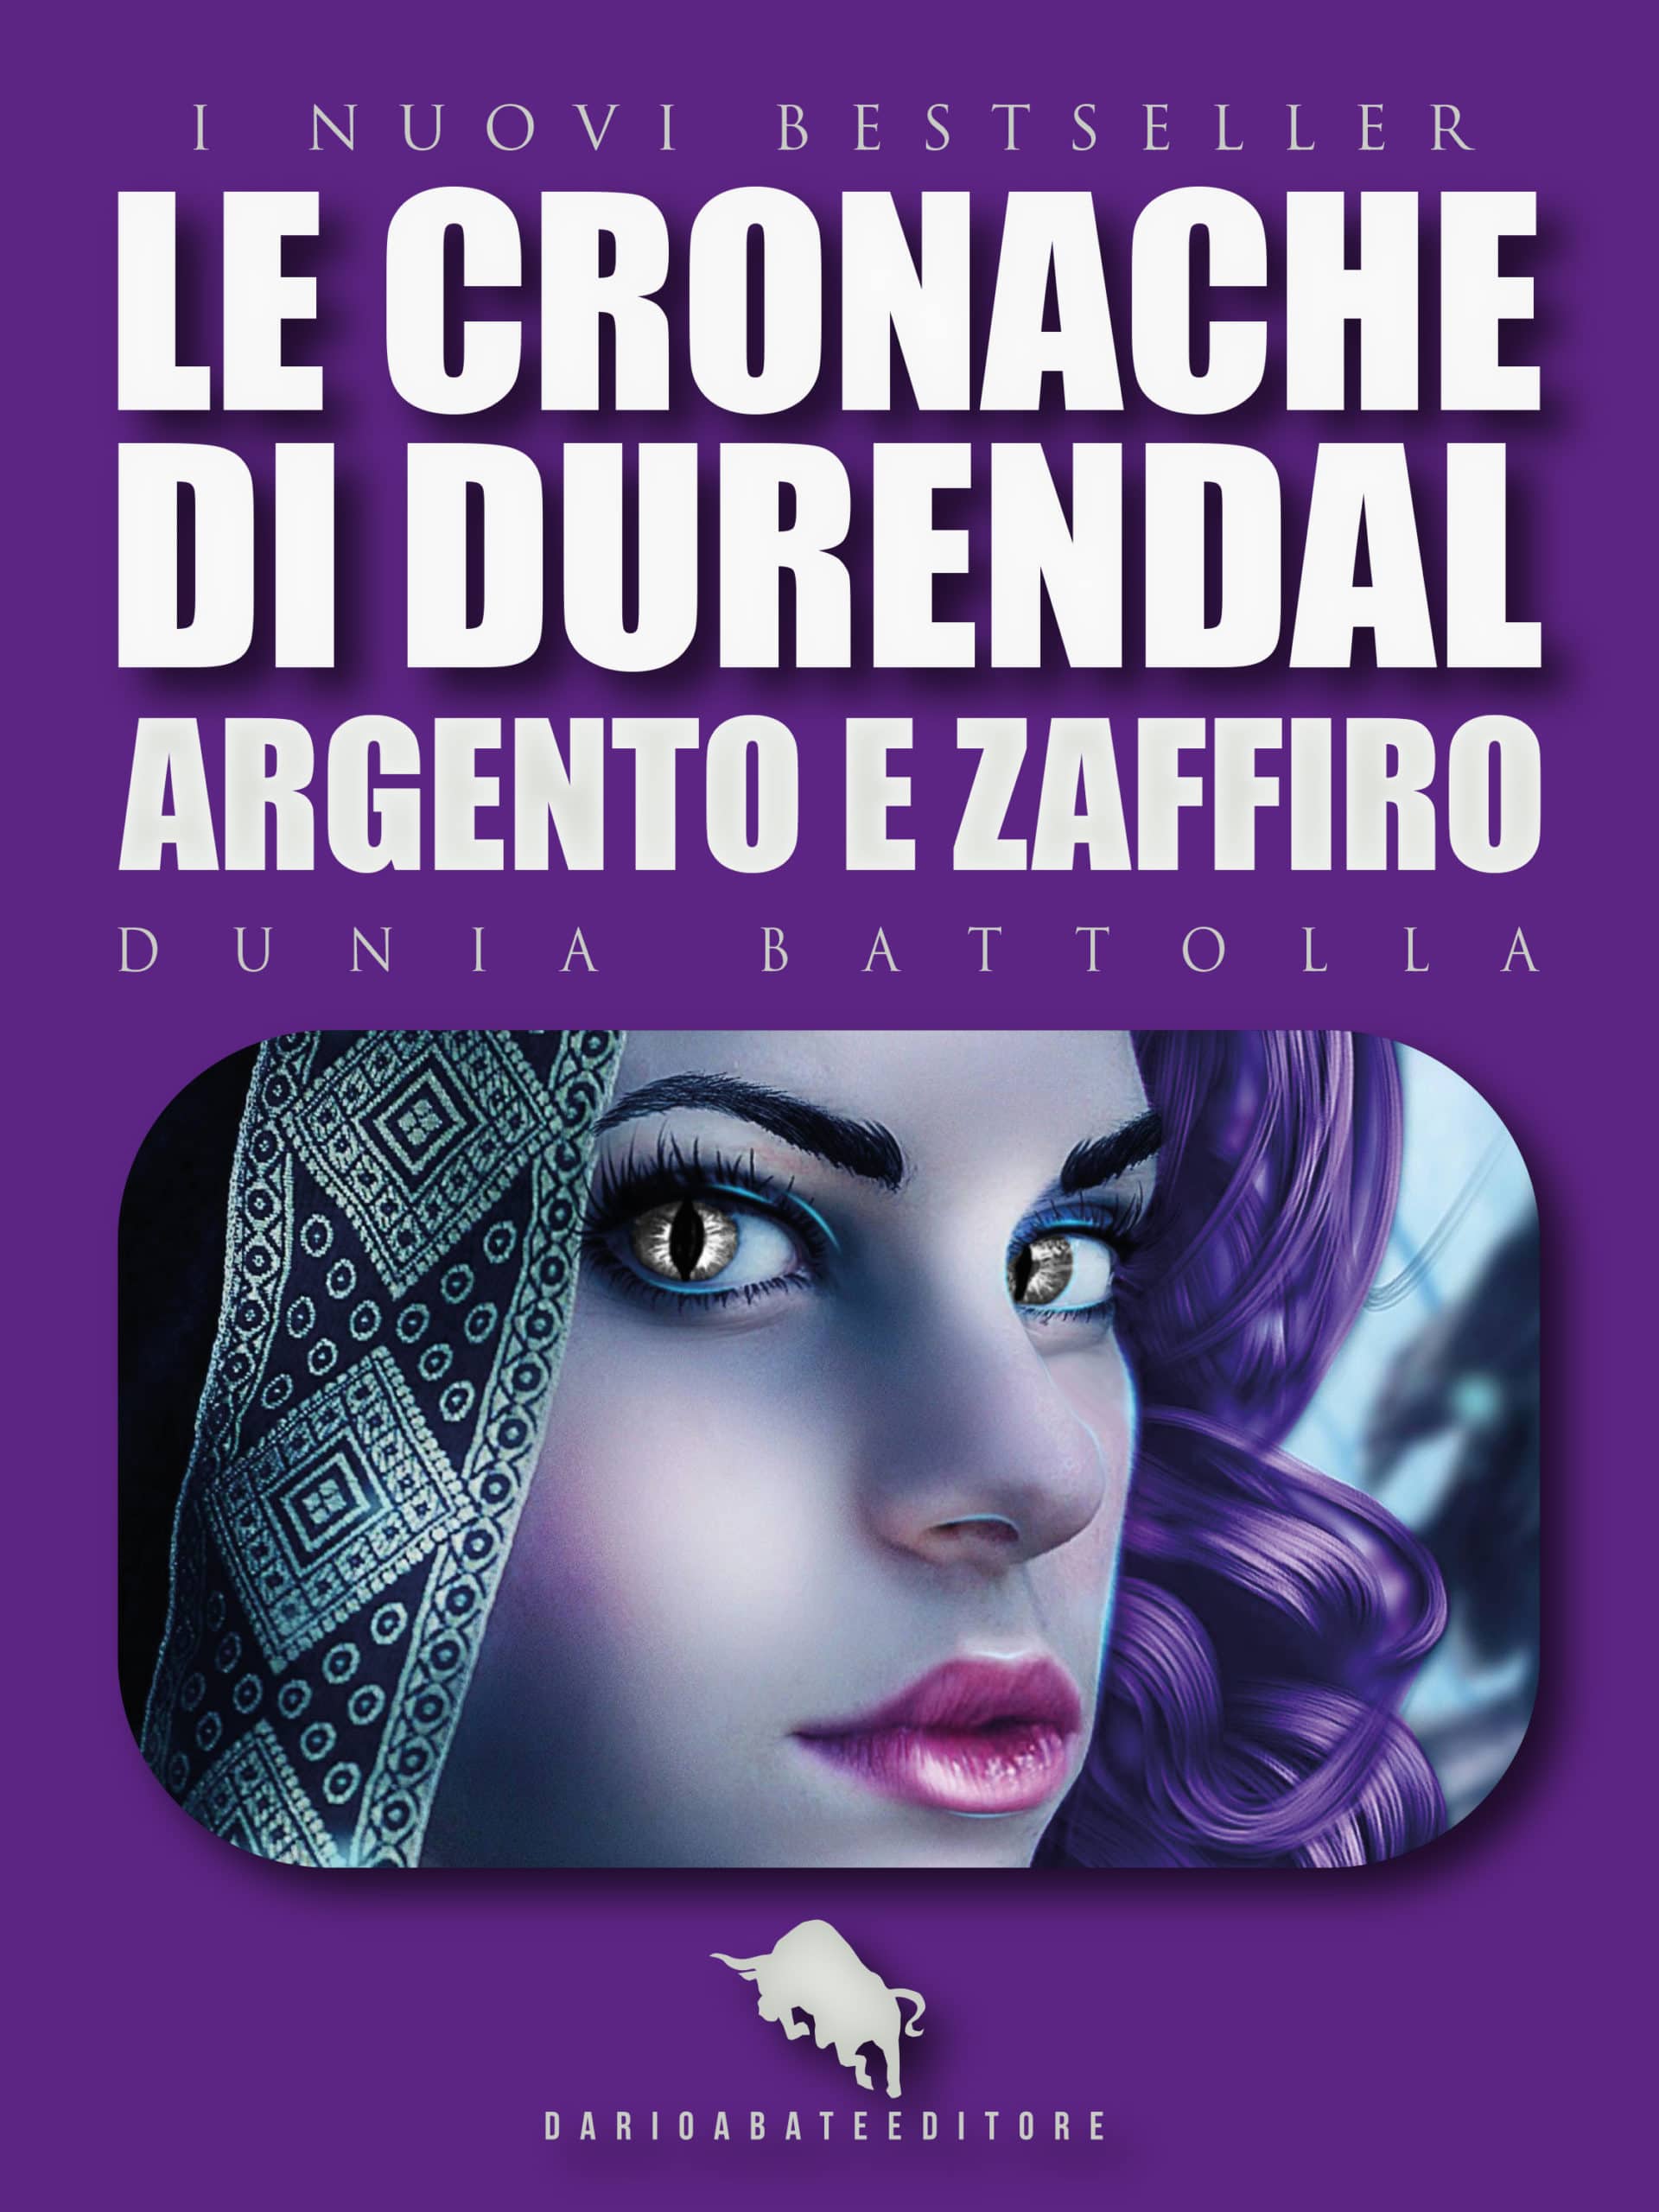 Le cronache di Durendal: Argento e Zaffiro, di Dunia Battolla